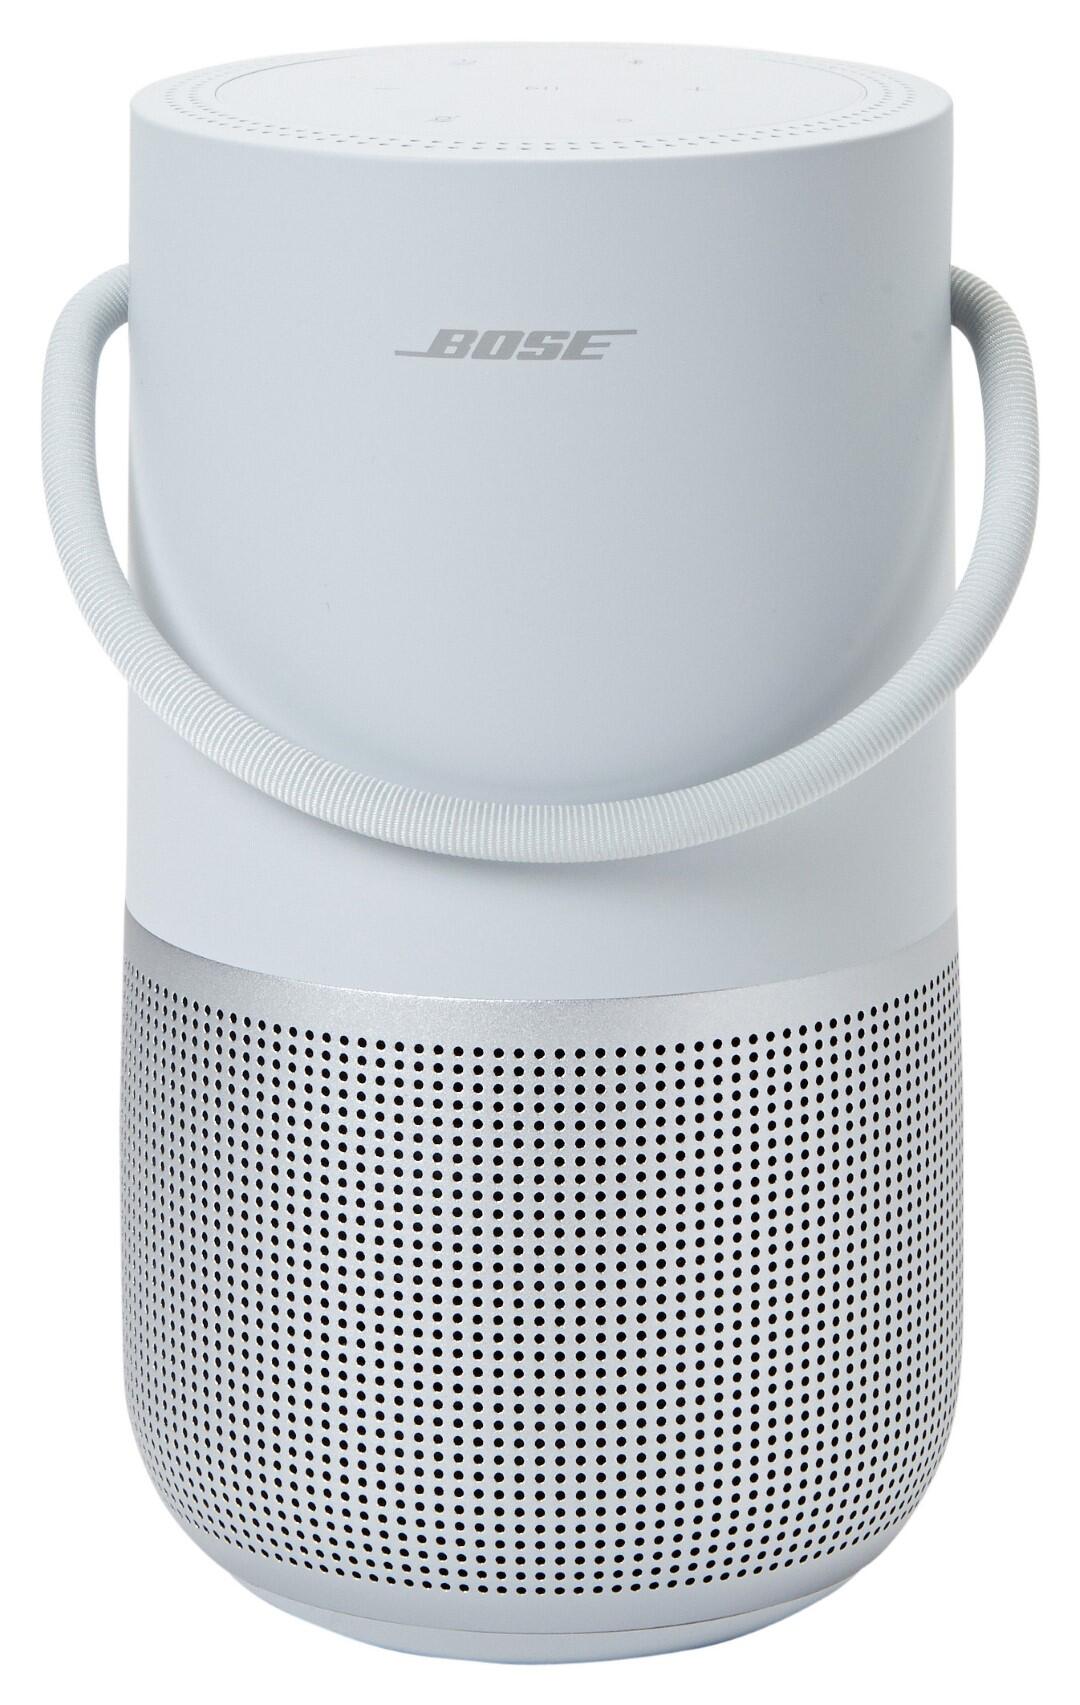 Portable Home Speaker Bose